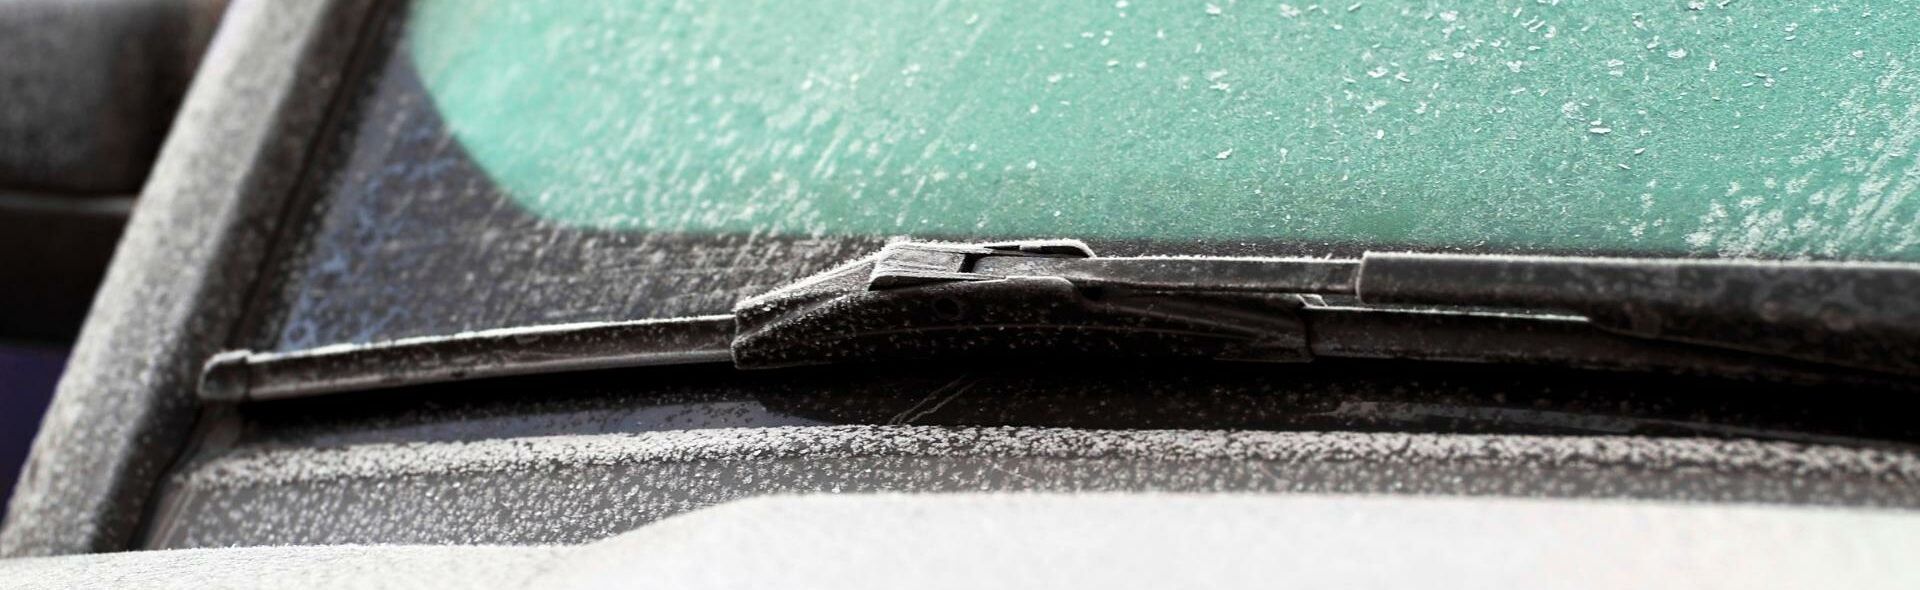 Ways to De-Ice Your Windshield by Houska Automotive